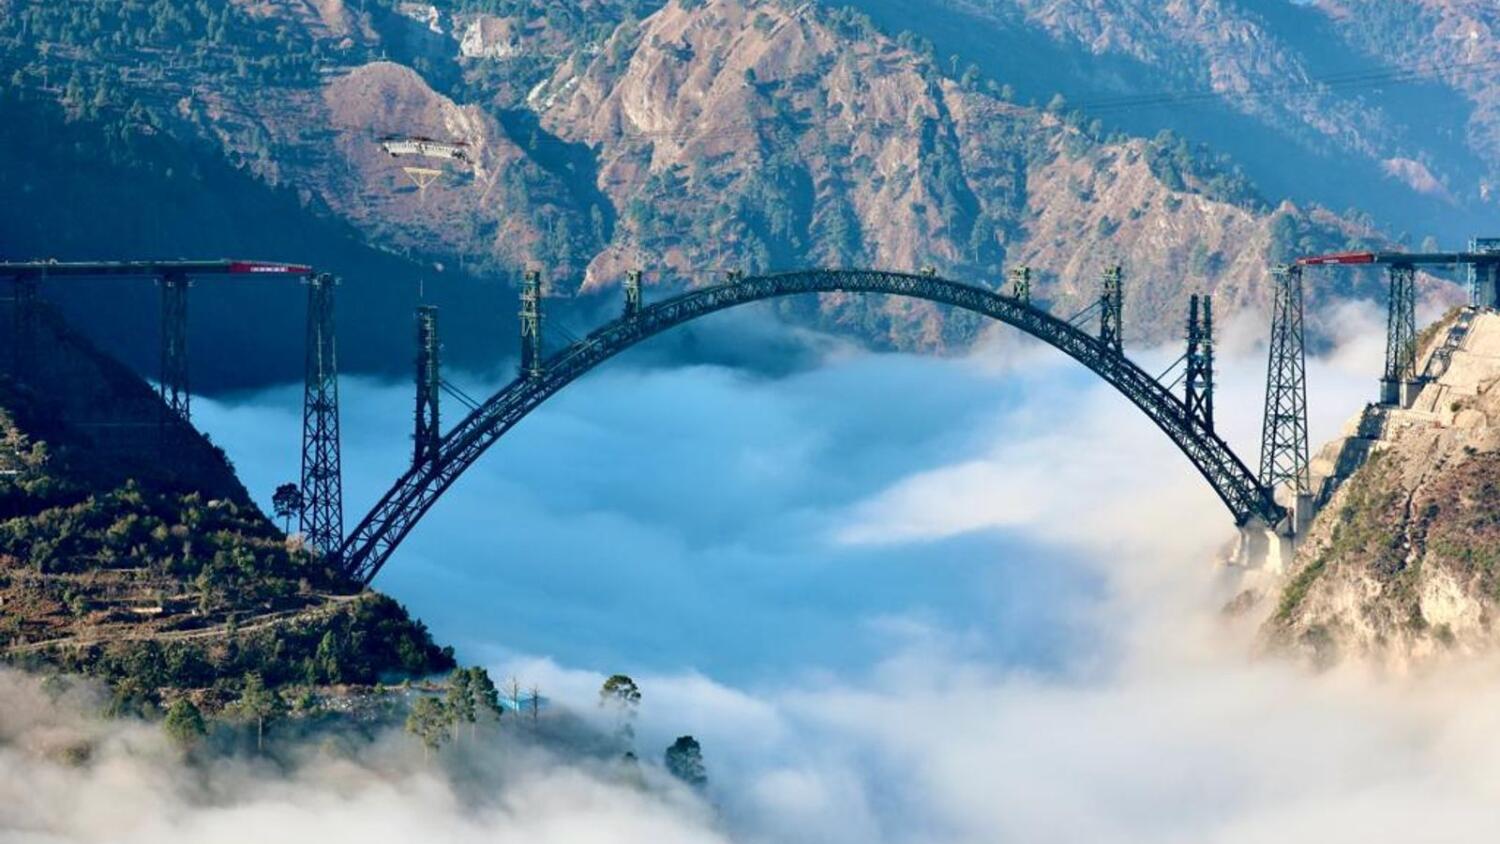 Đây là cây cầu đường sắt cao nhất trên thế giới, với chiều cao 359m so với mặt sông. Ảnh tư liệu Twitter